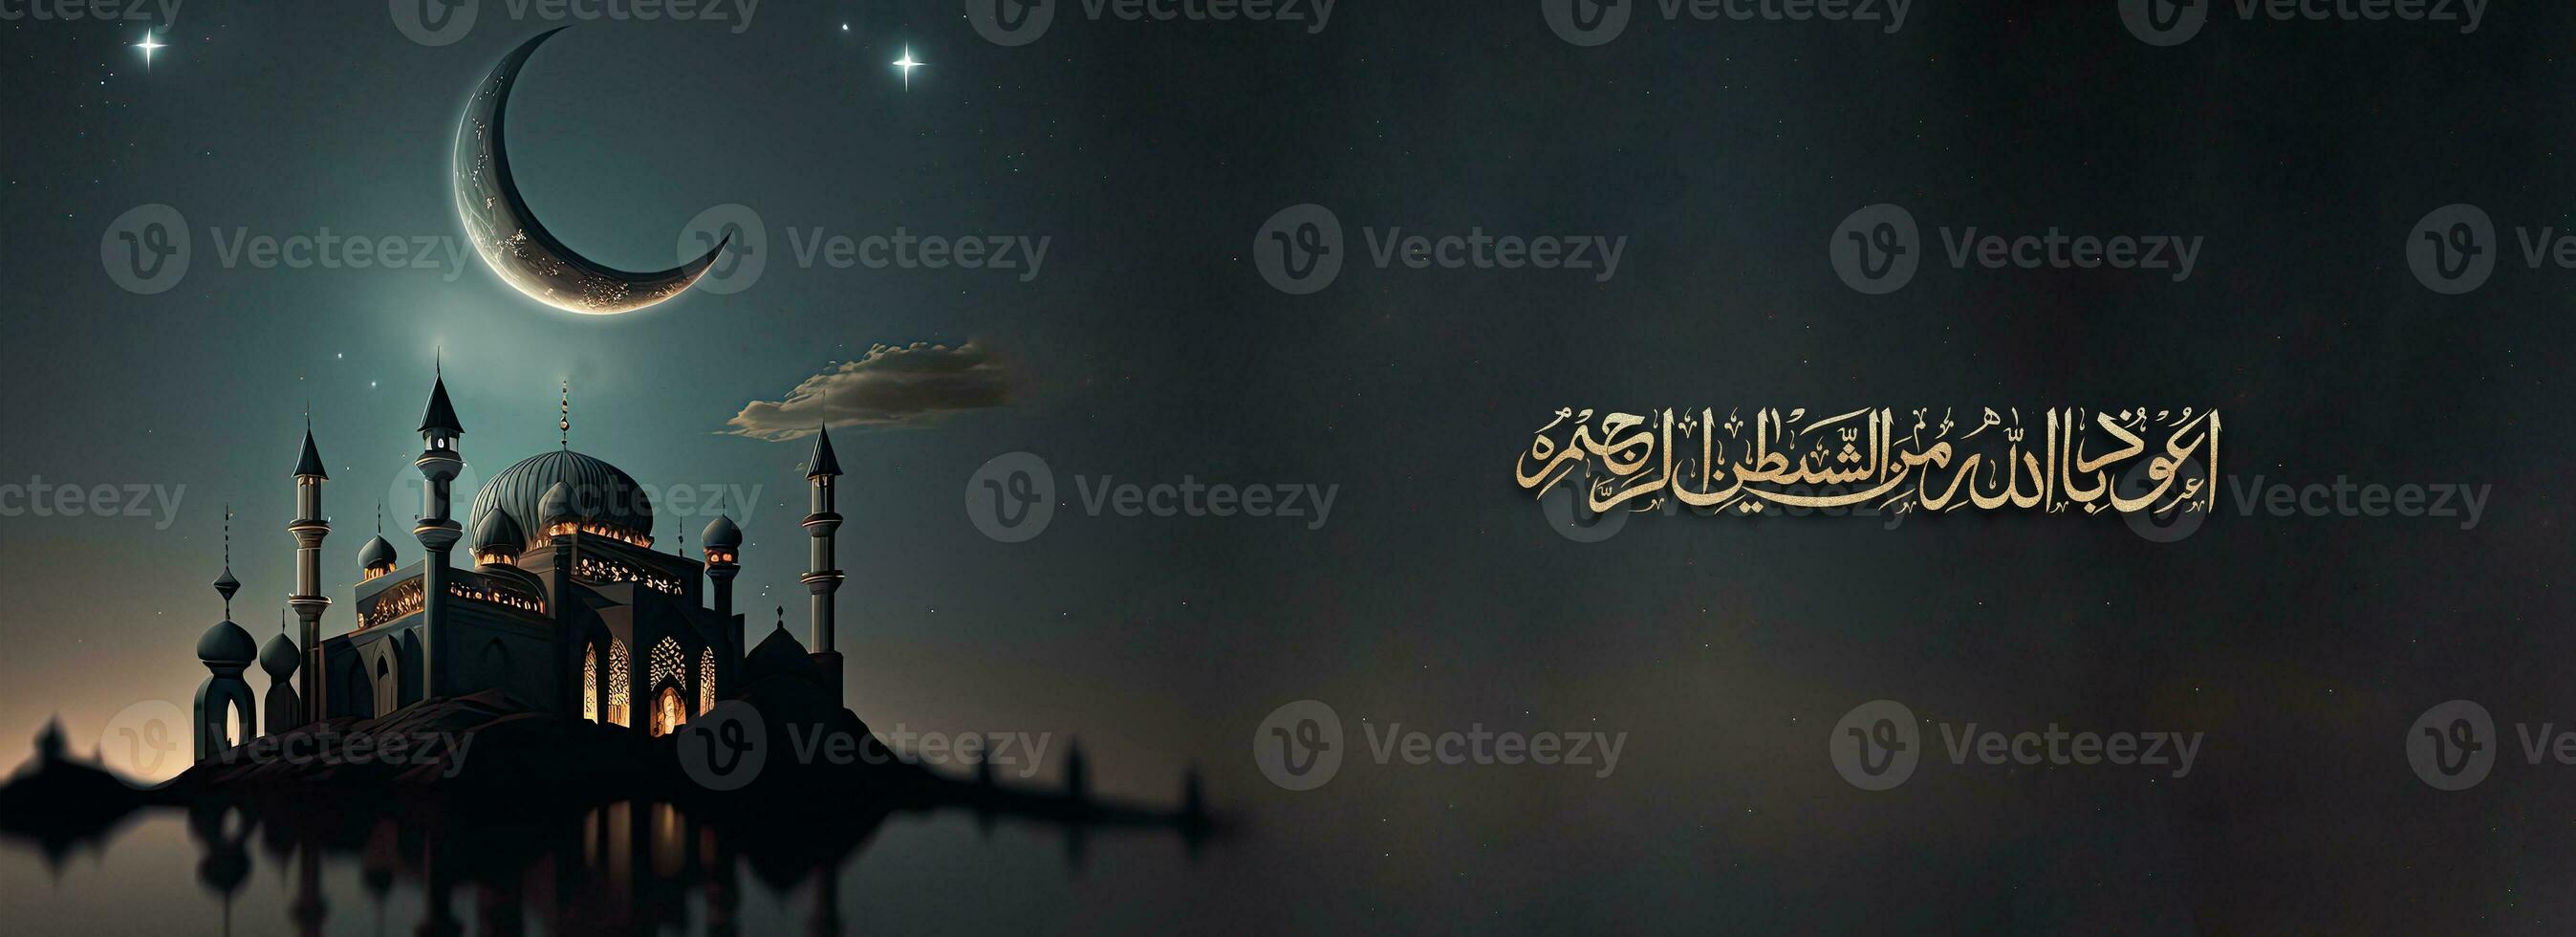 dorado reluciente Arábica islámico caligrafía de deseo temor de Alá trae inteligencia, honestidad y amor y 3d hacer de mezquita, creciente Luna noche antecedentes. foto